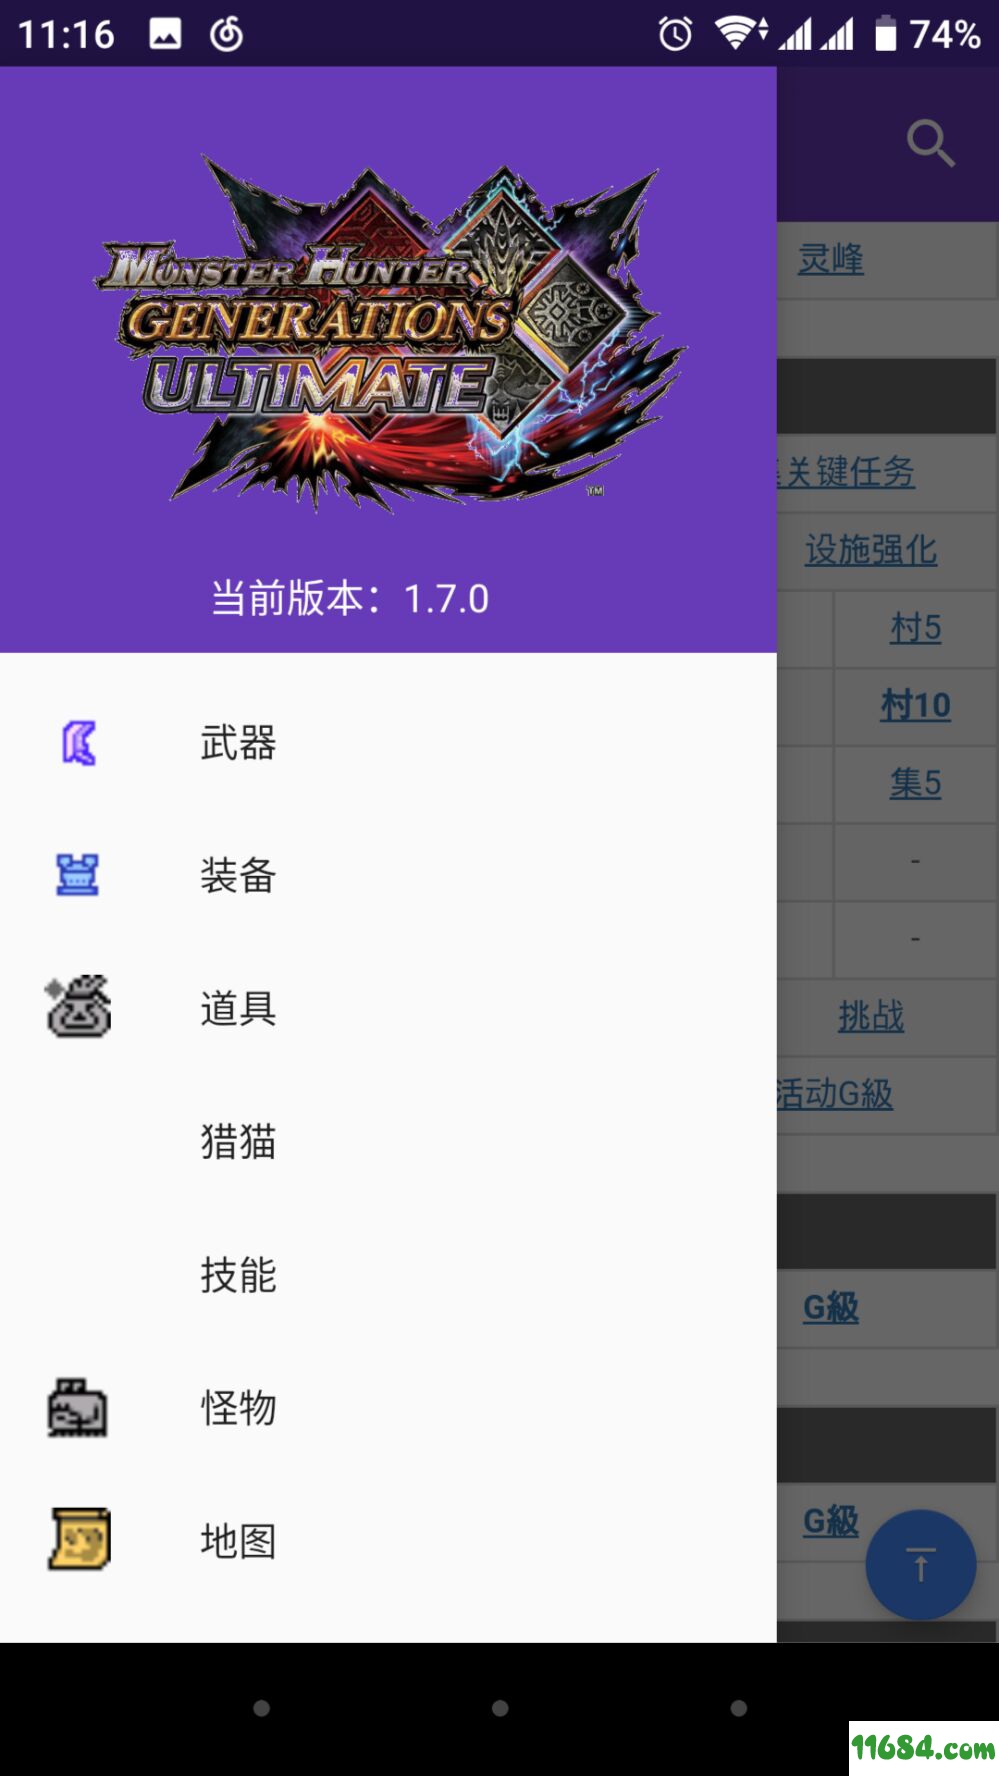 怪物猎人GU中文资料库下载-怪物猎人GU 中文资料库 安卓版下载